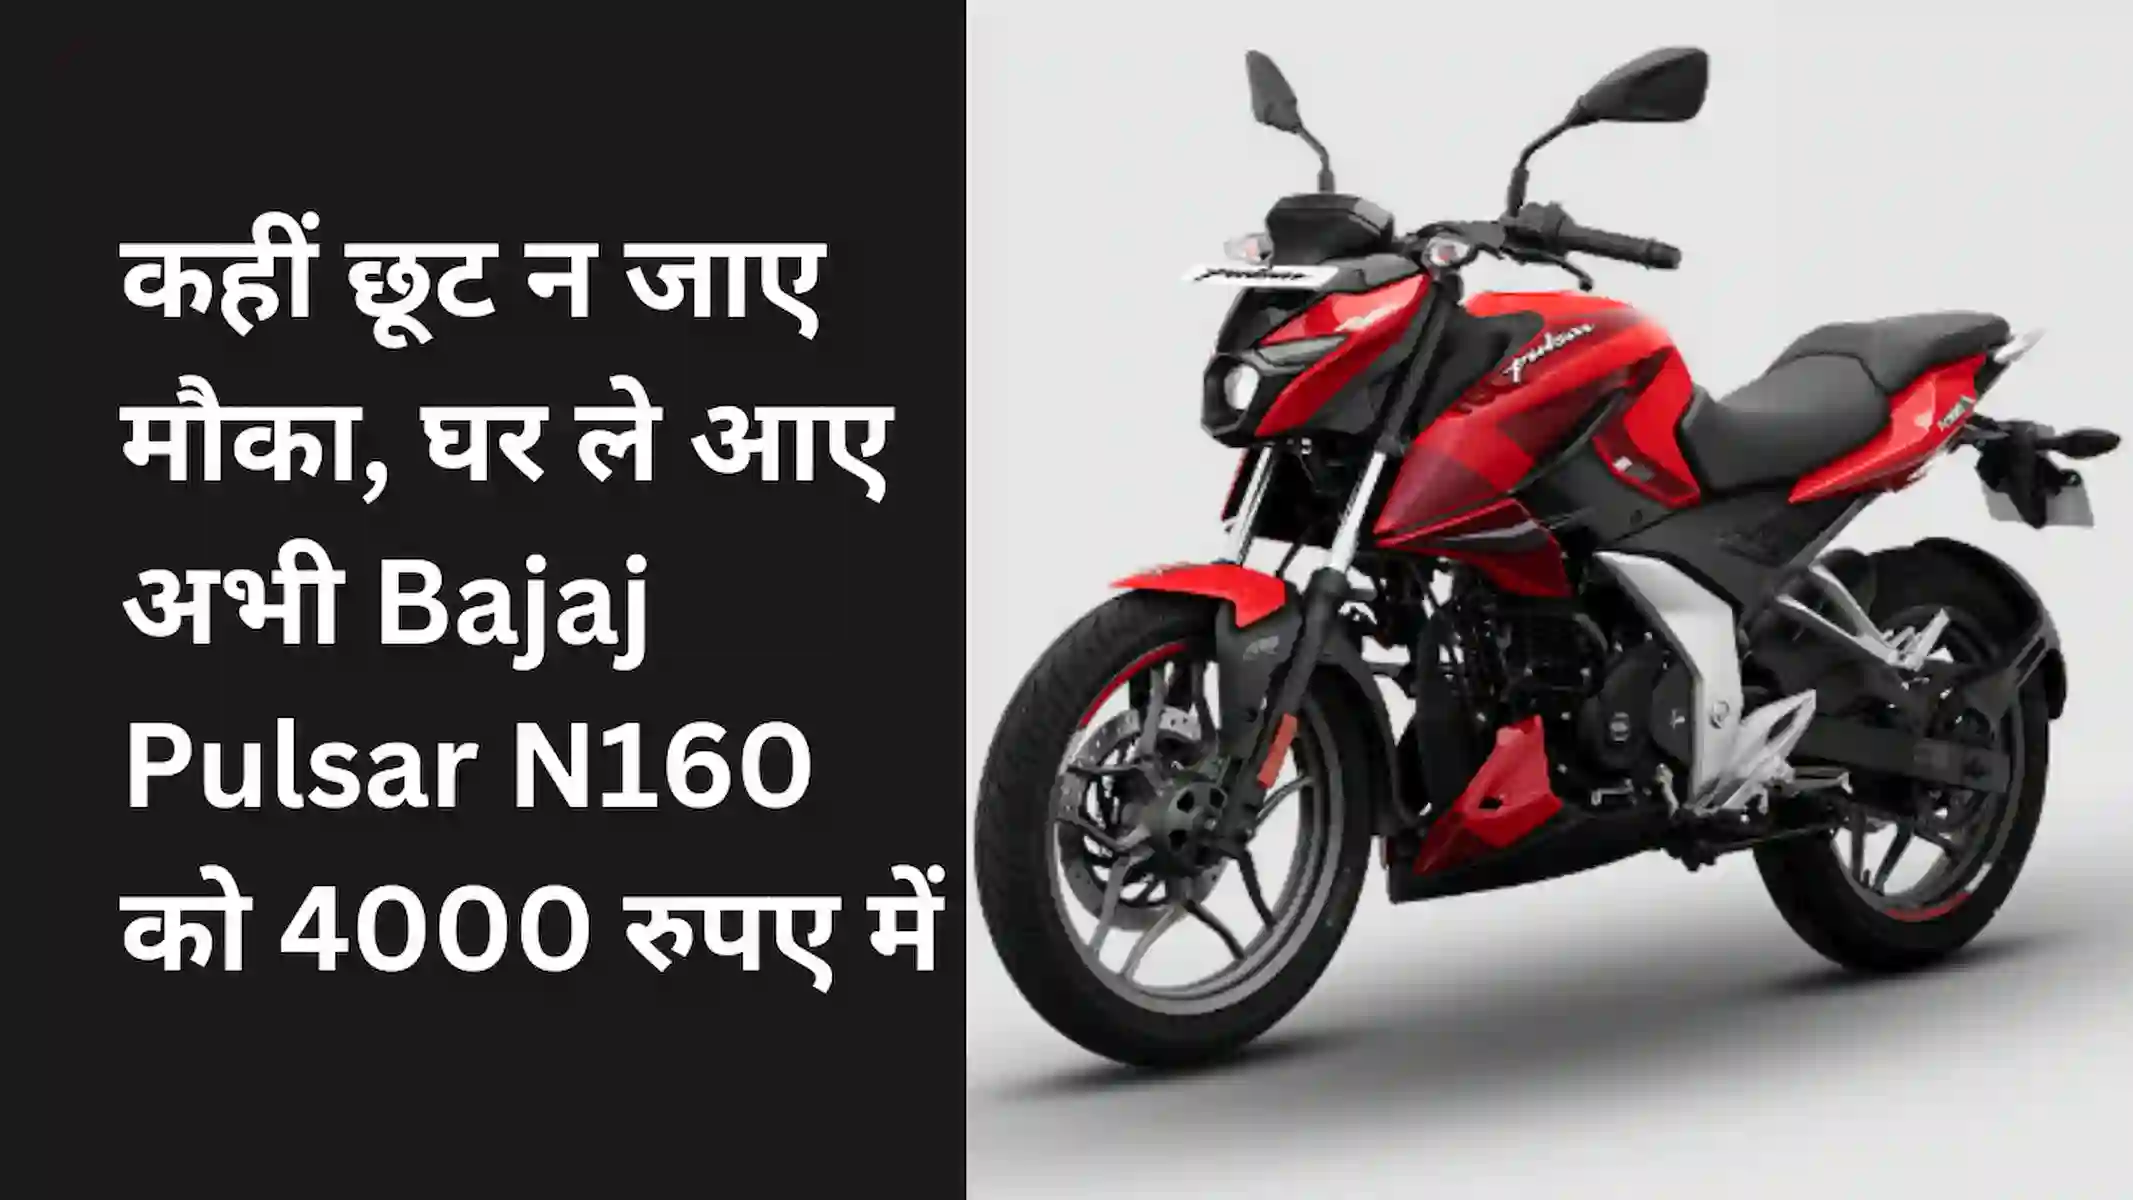 कहीं छूट न जाए मौका, घर ले आए अभी Bajaj Pulsar N160 को 4000 रुपए में